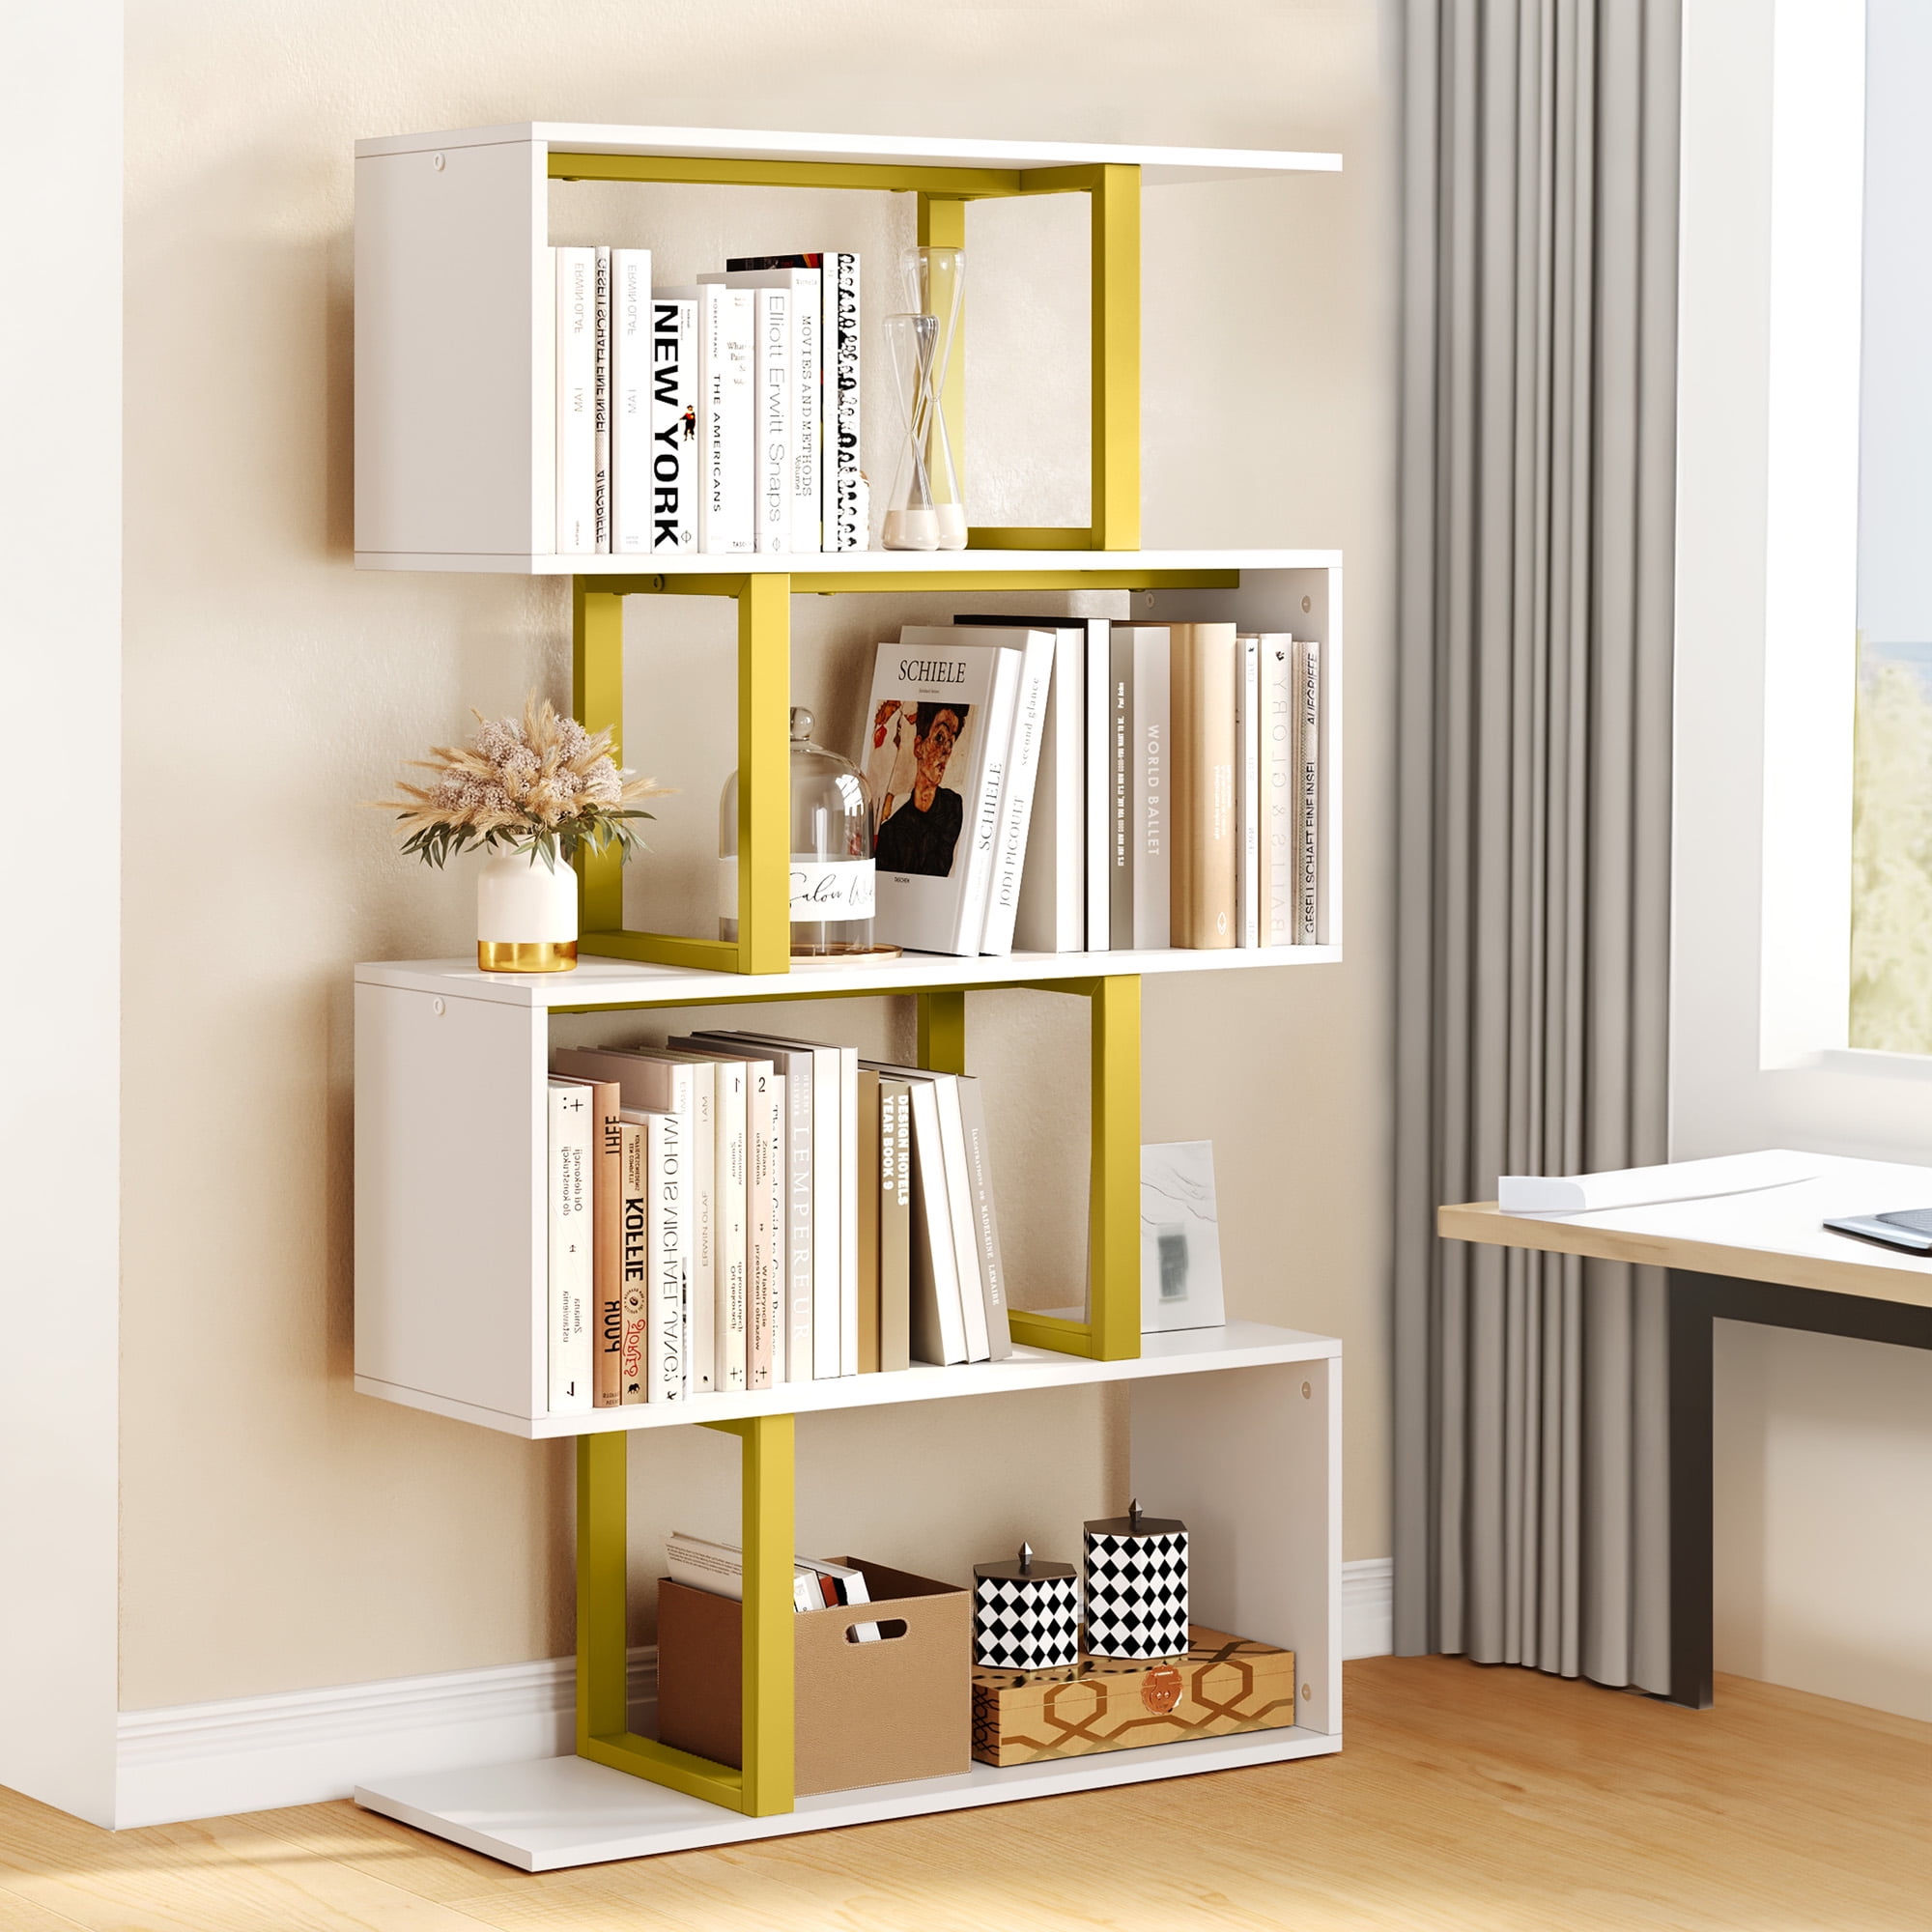 Ebern Designs Baram 5 Shelf Bookcase Modern White Wooden Bookshelf for  Bedroom, Living Room, Home Office